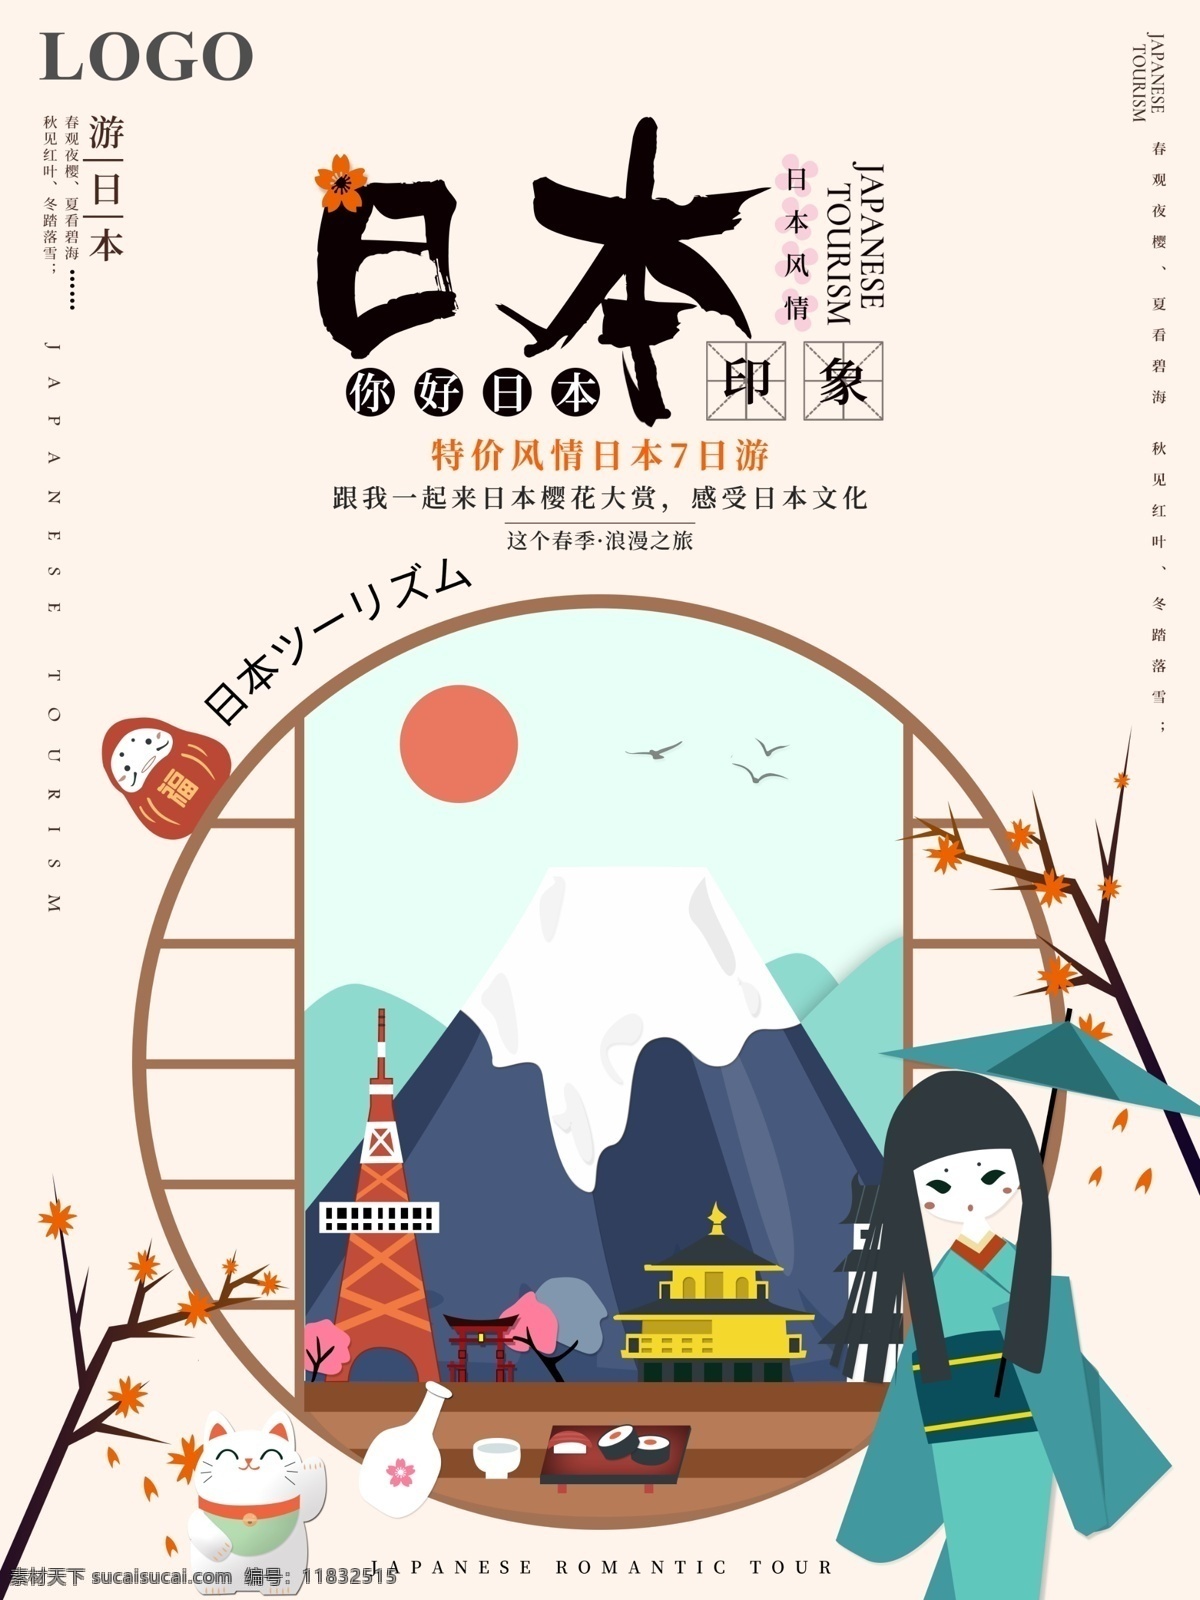 原创 小 清新 日本 印象 旅游 宣传海报 日本游 旅行 日本印象 小清新 日本风景